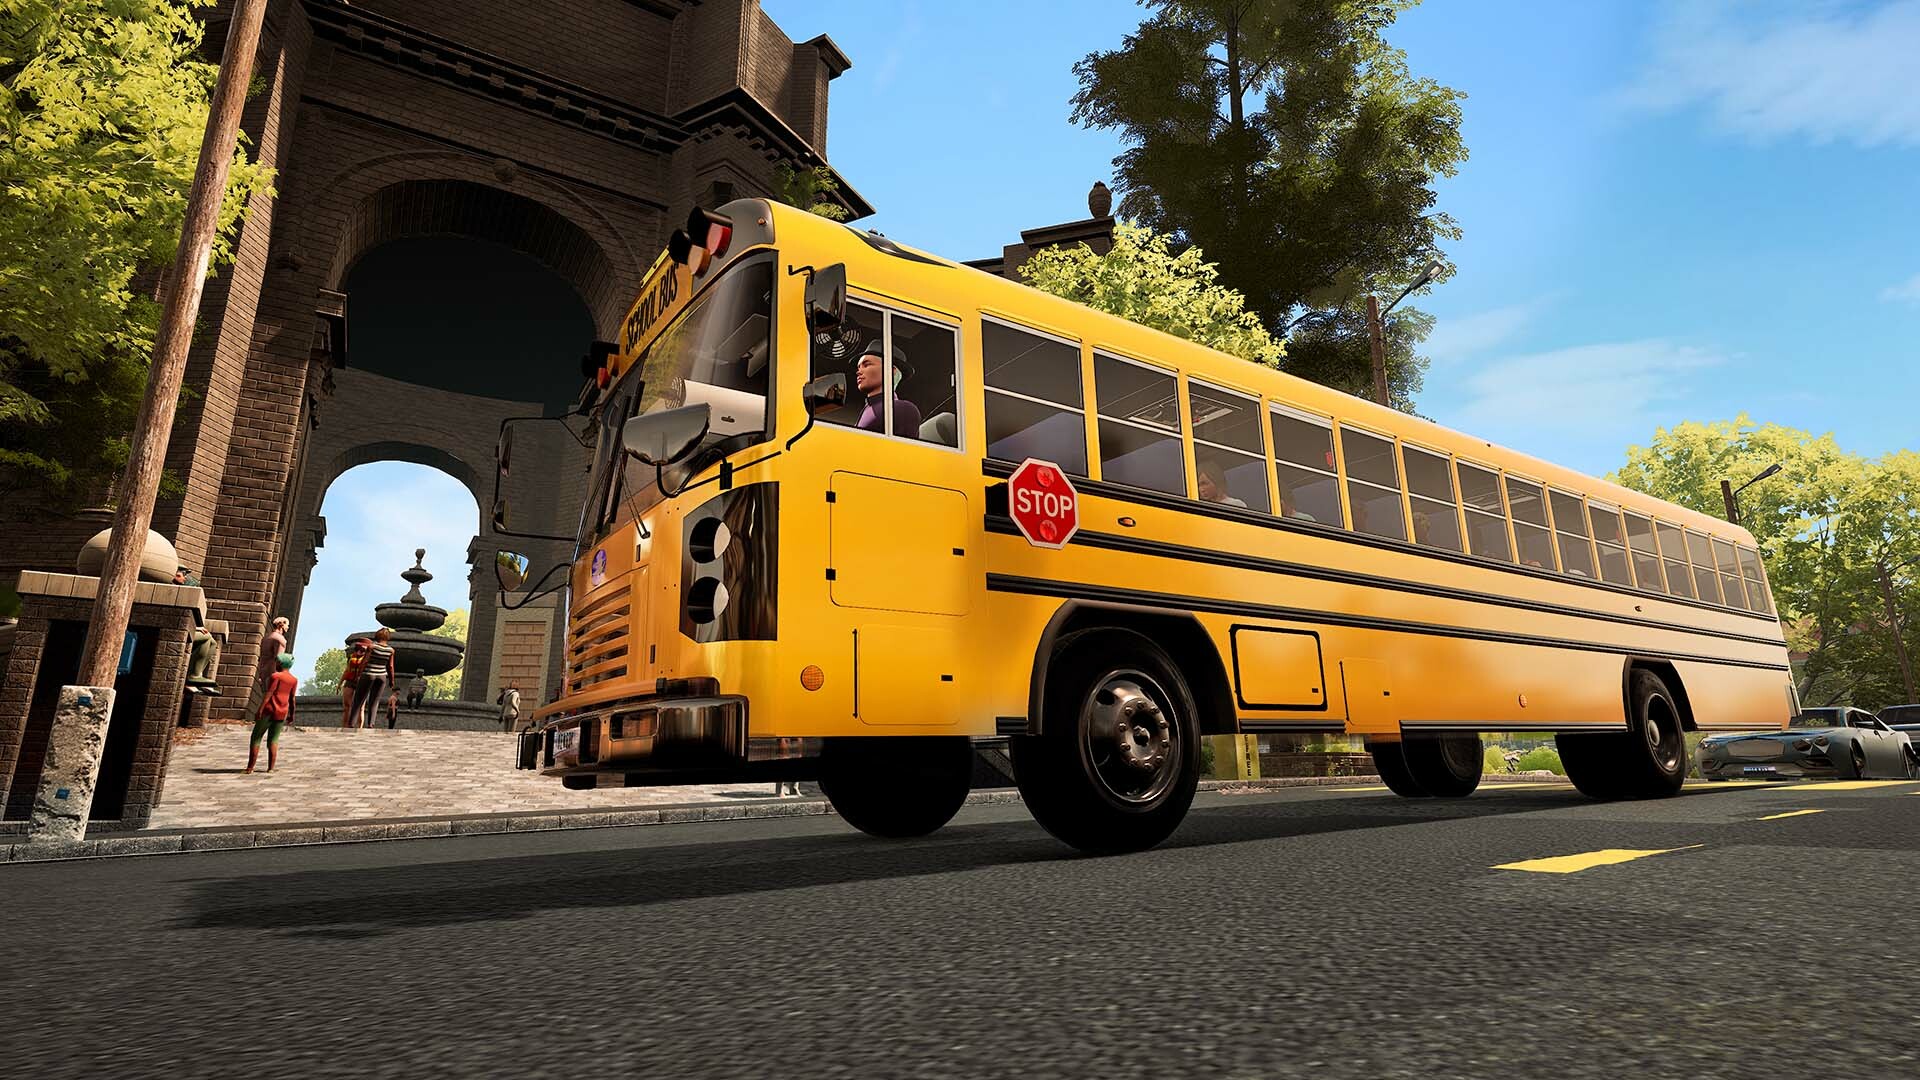 Bus Simulator 21 Next Stop - Season Pass DLC Steam CD Key 18.61$